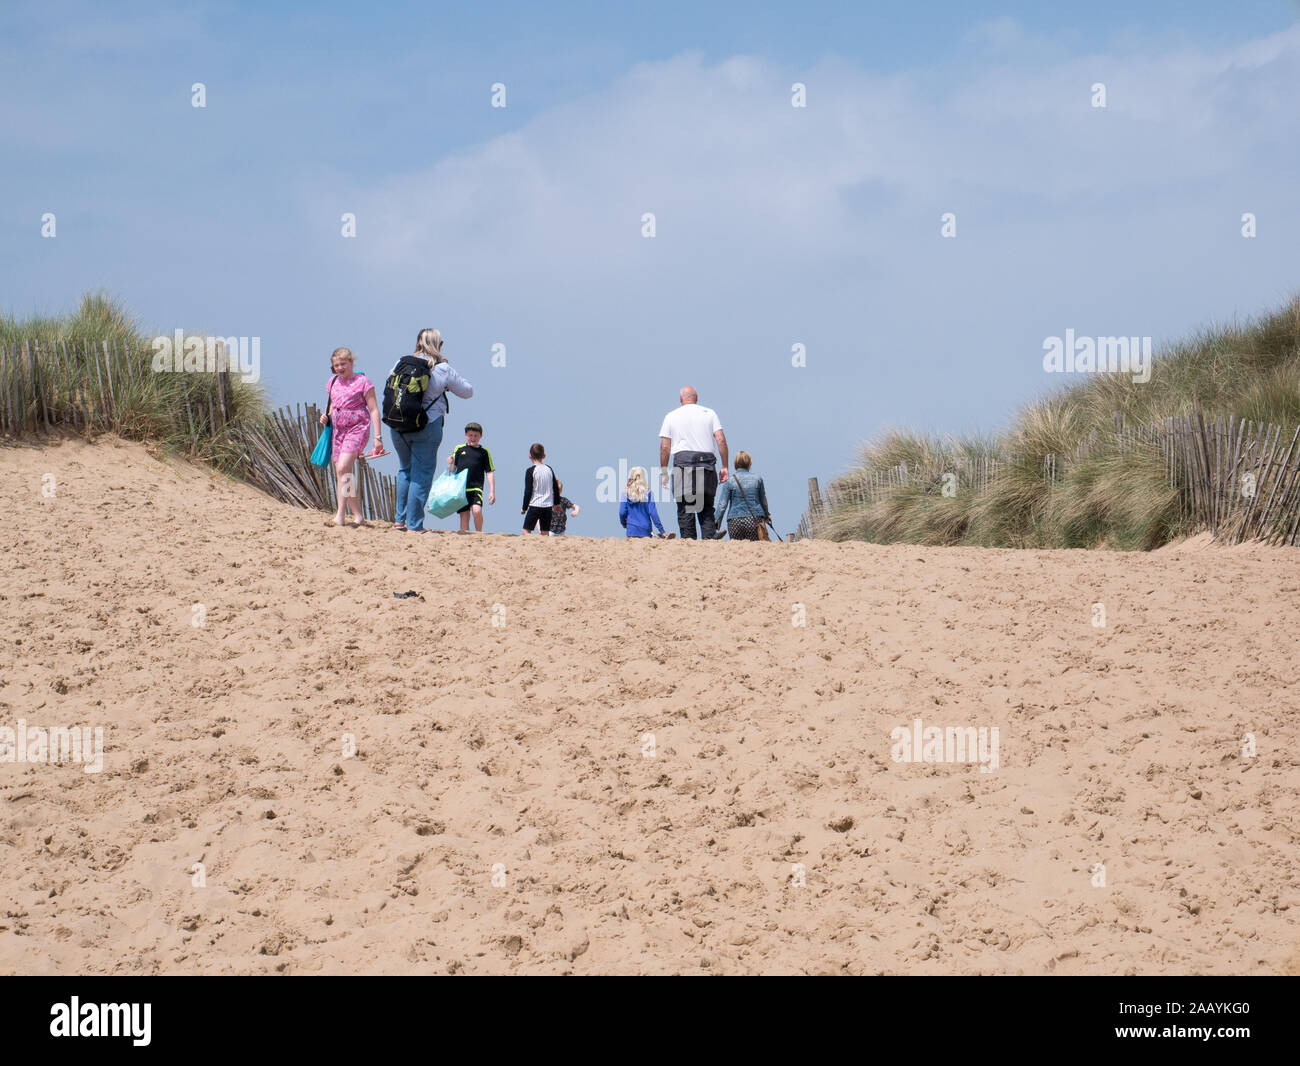 People walking over sand dune Stock Photo - Alamy